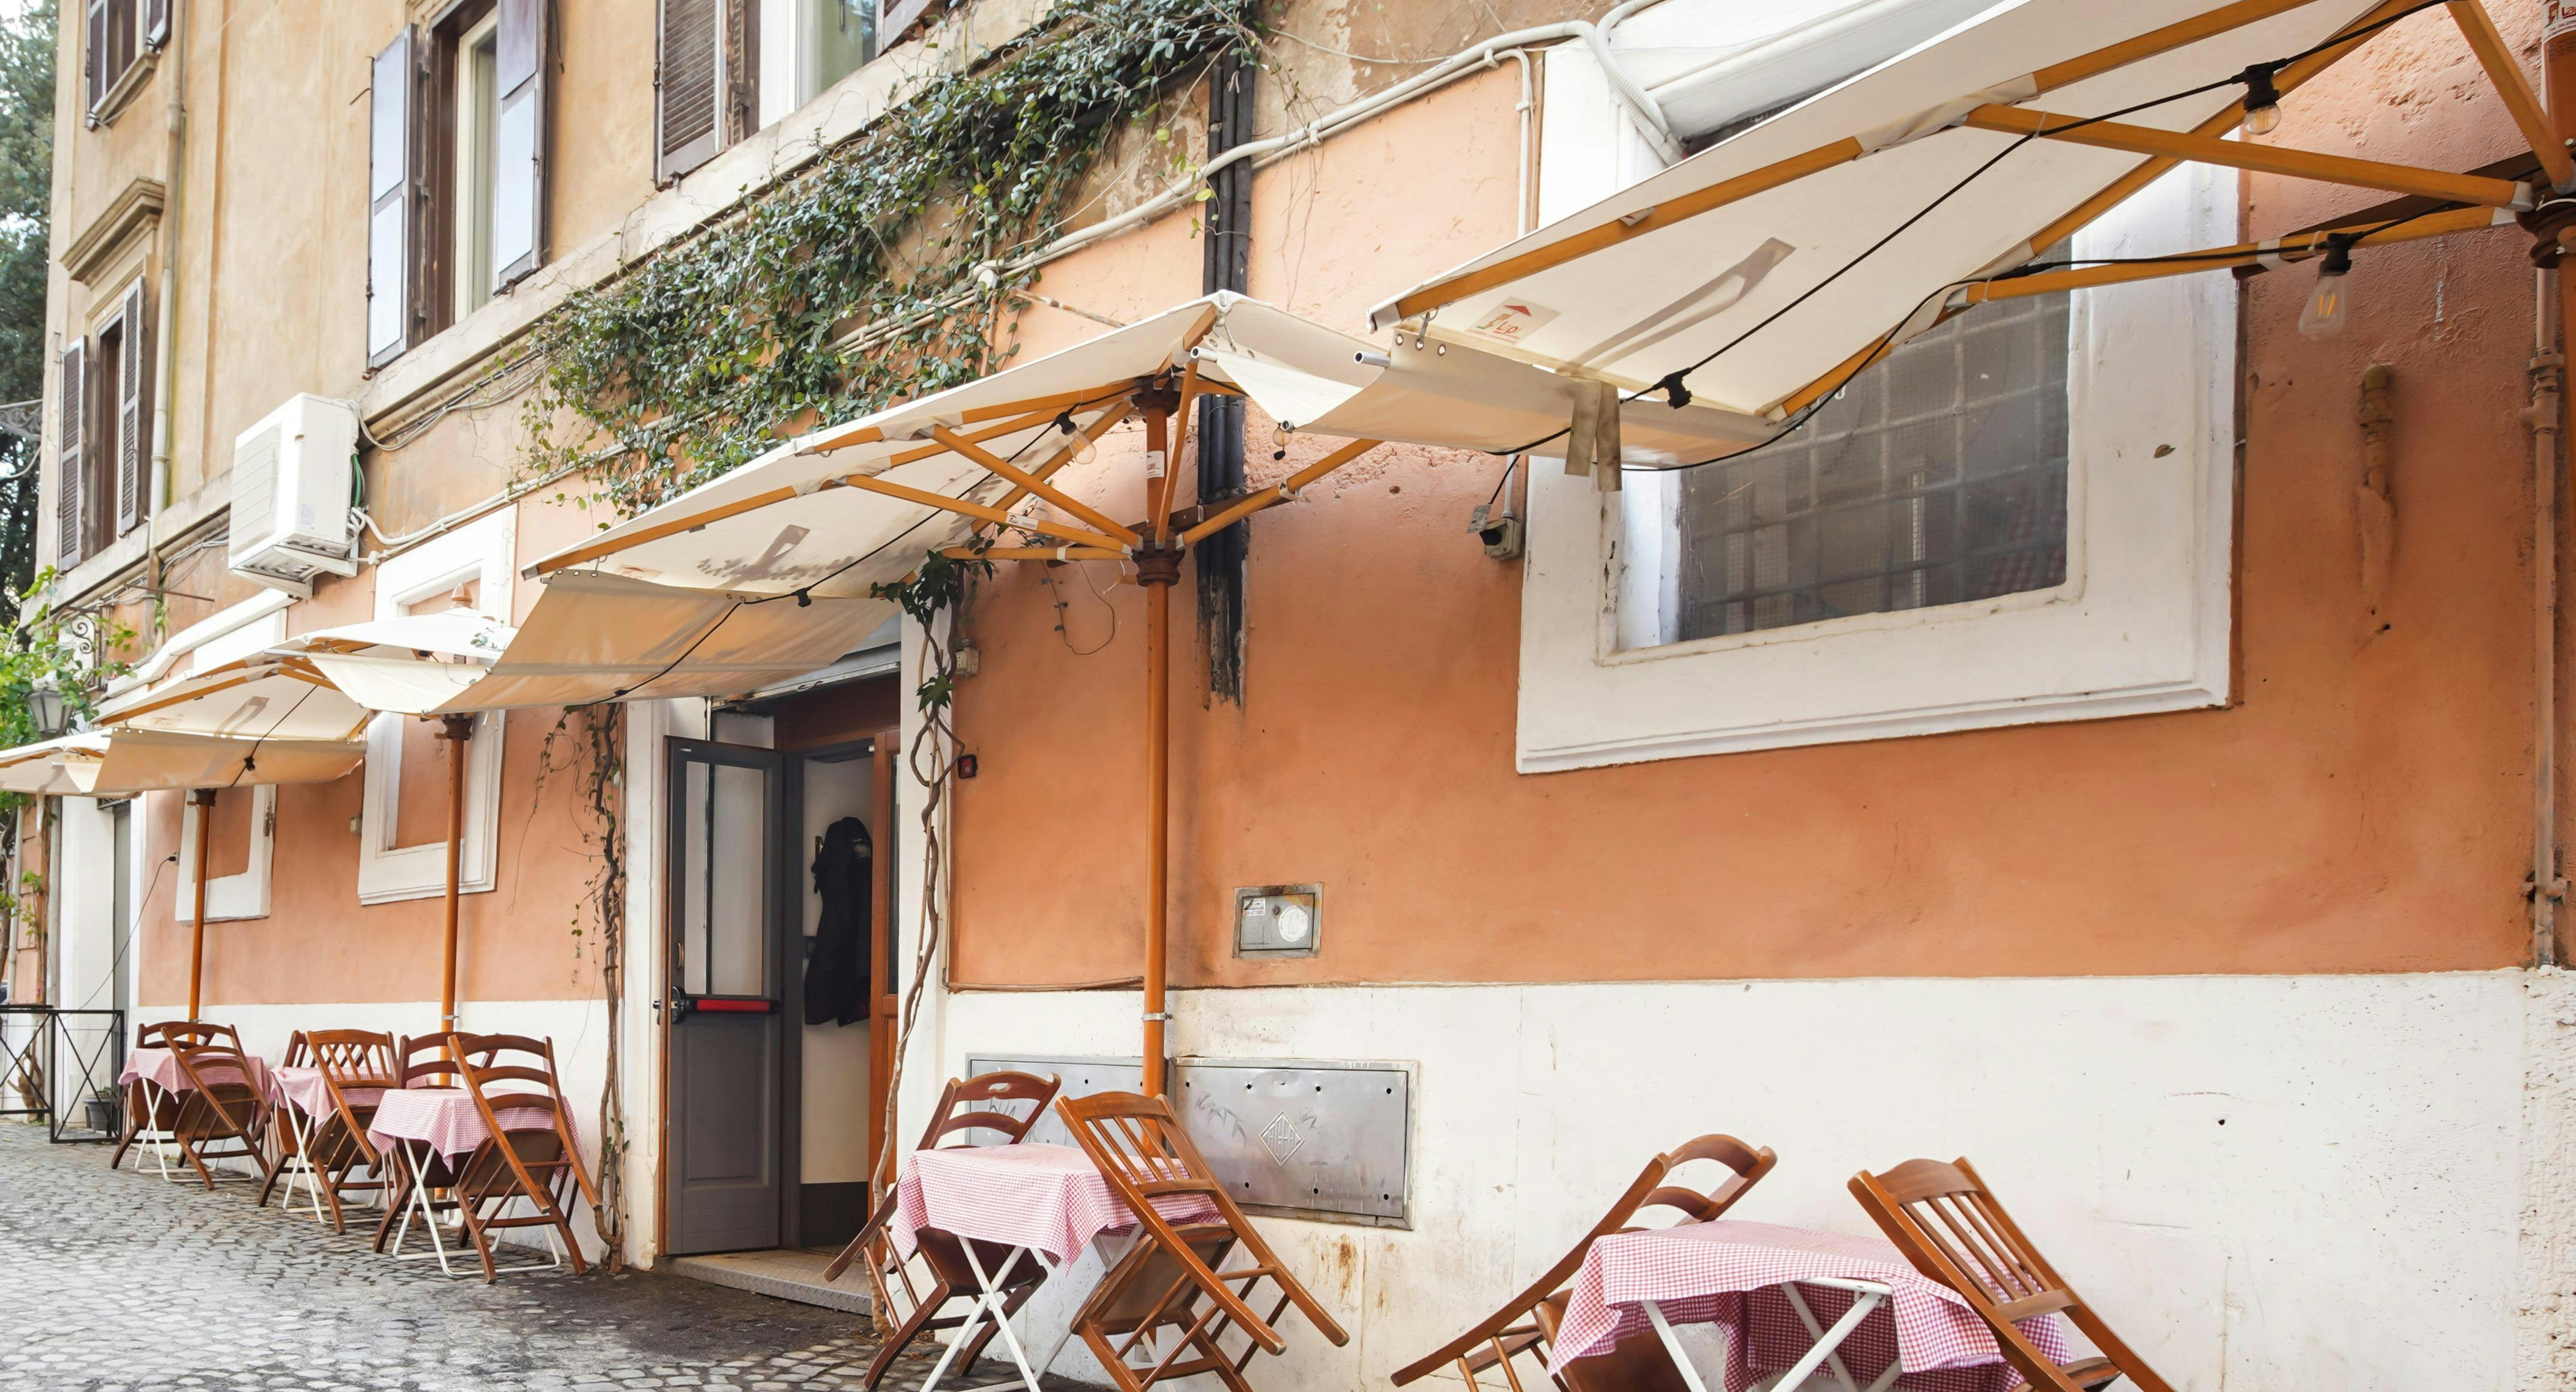 Photo of restaurant Antica Osteria Ponte Sisto in Trastevere, Rome